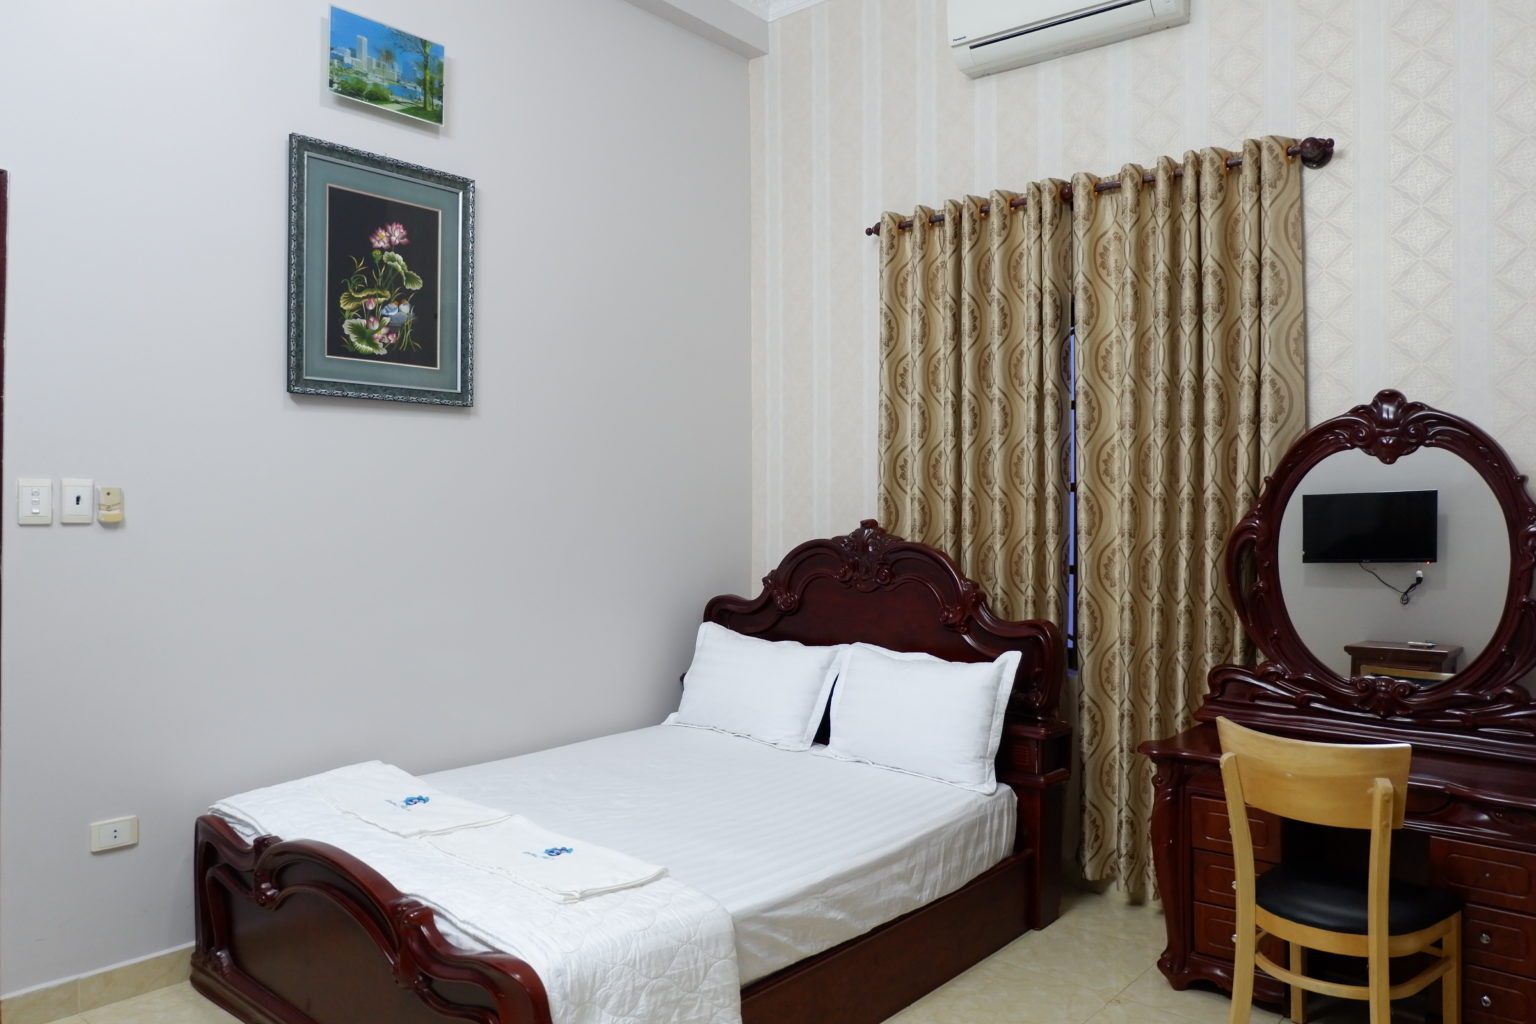 Hình ảnh phòng ngủ với giường đôi êm ái tại biệt thự Vũng Tàu Ali6B